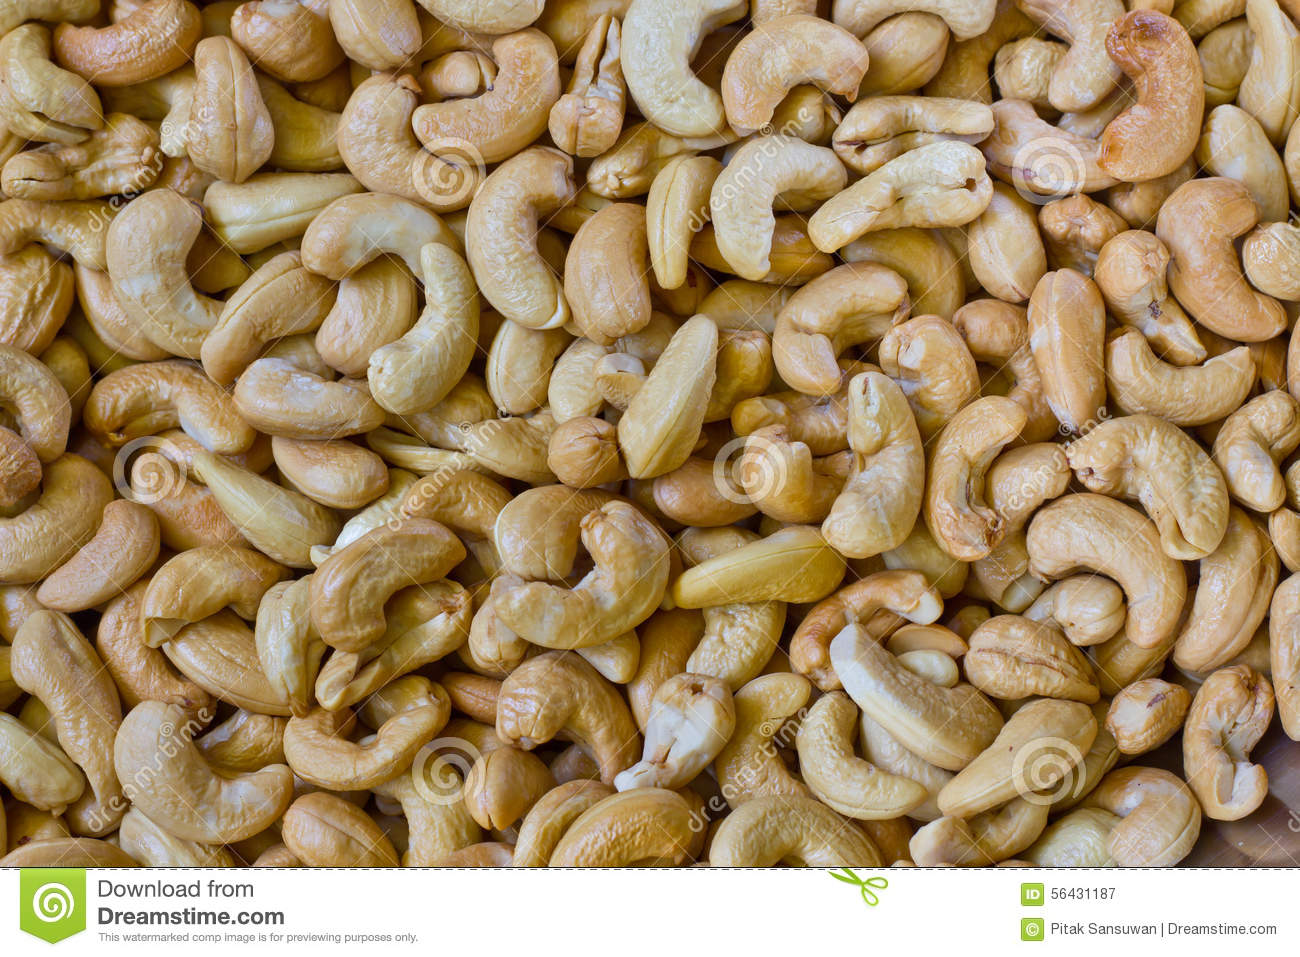 Cashaw nut